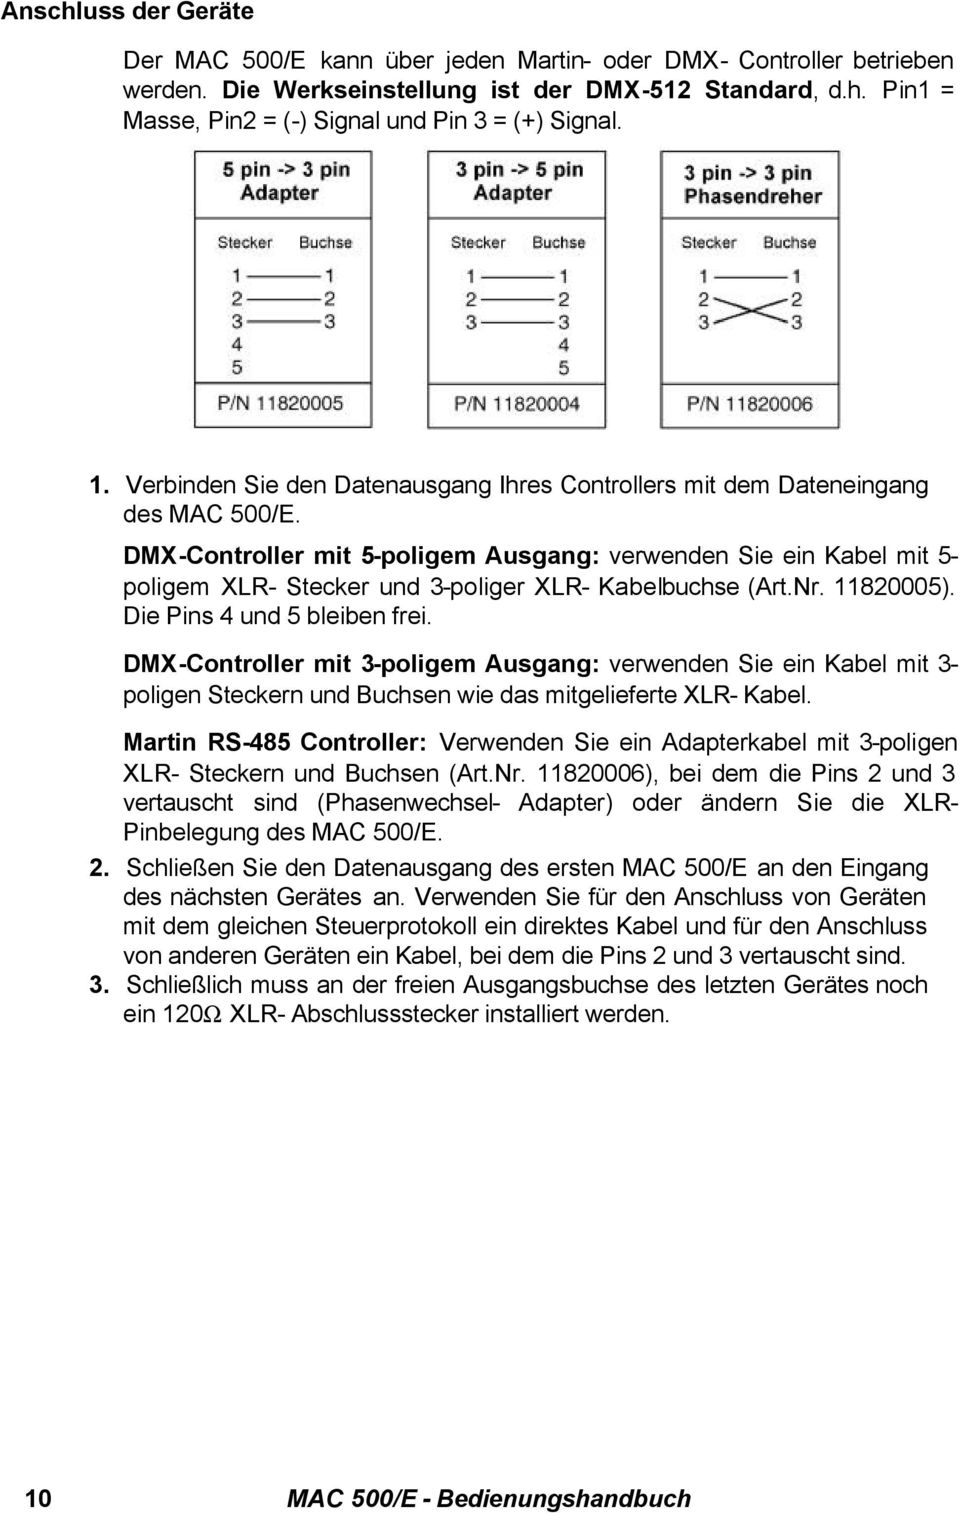 DMX-Controller mit 5-poligem Ausgang: verwenden Sie ein Kabel mit 5- poligem XLR- Stecker und 3-poliger XLR- Kabelbuchse (Art.Nr. 11820005). Die Pins 4 und 5 bleiben frei.